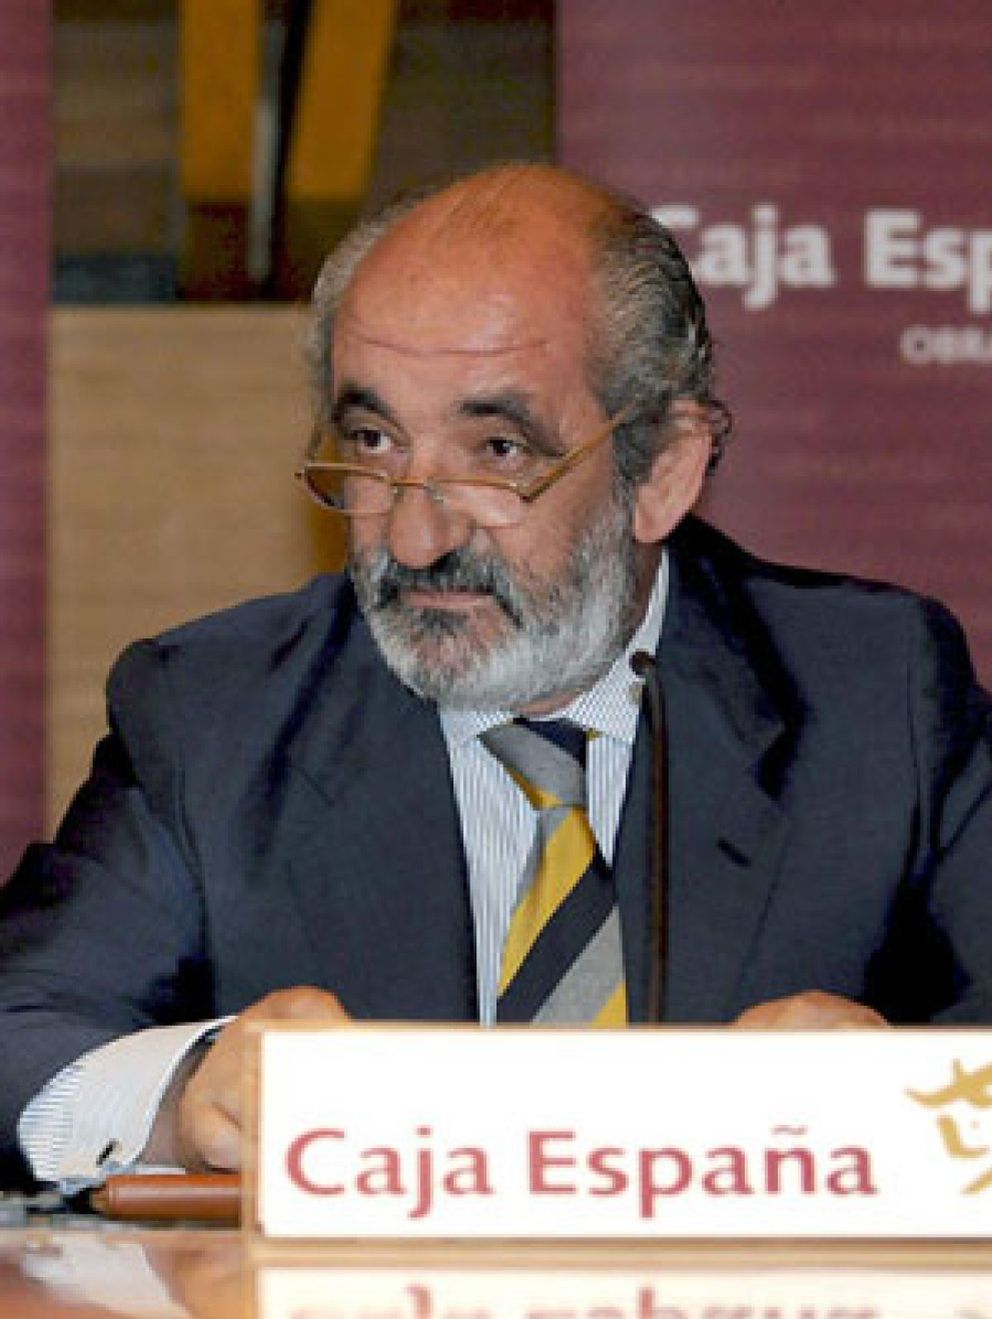 Foto: Las cajas de Castilla y León se fusionarán en una única marca por la presión del Banco de España